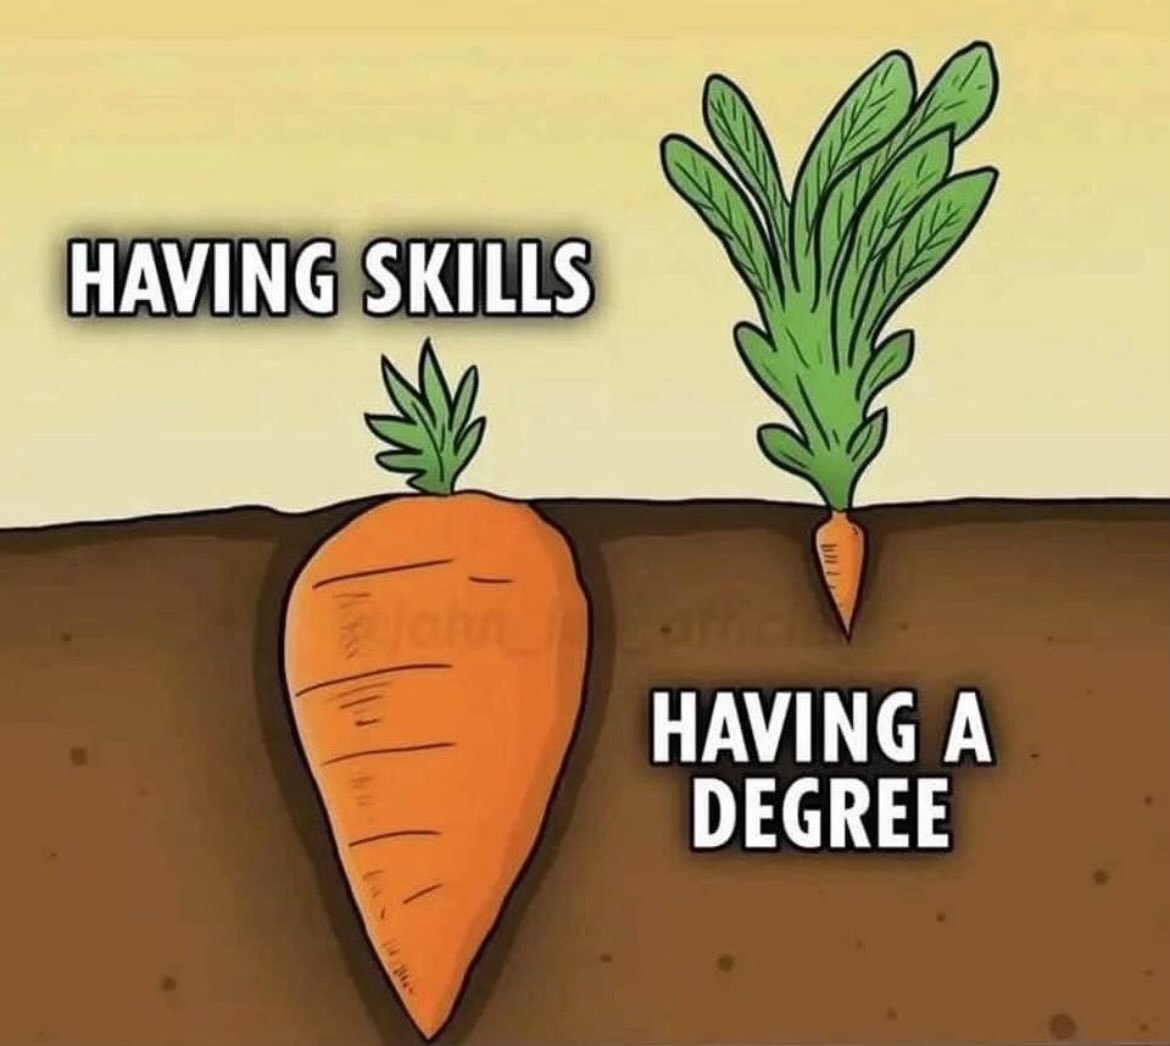 Skills > Degree.